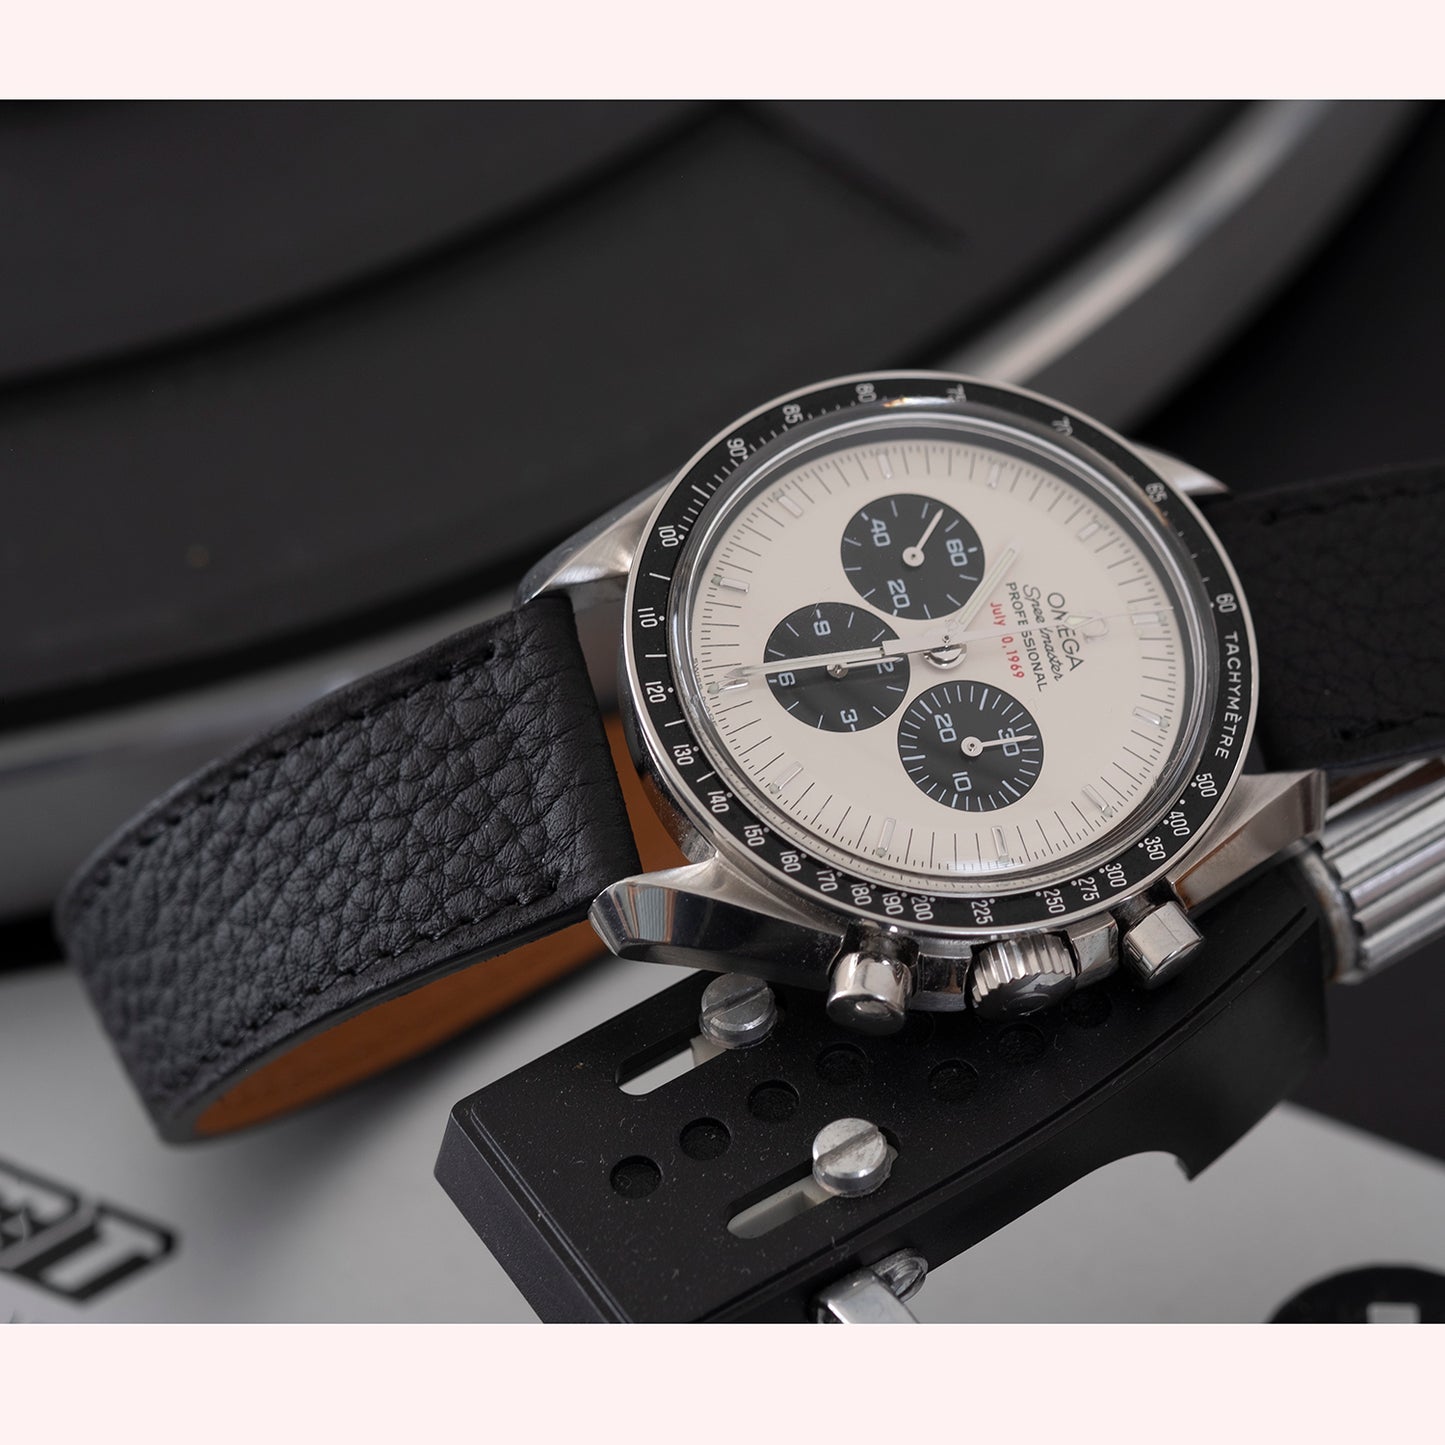 Bracelet de montre taurillon noir - Atelier romane